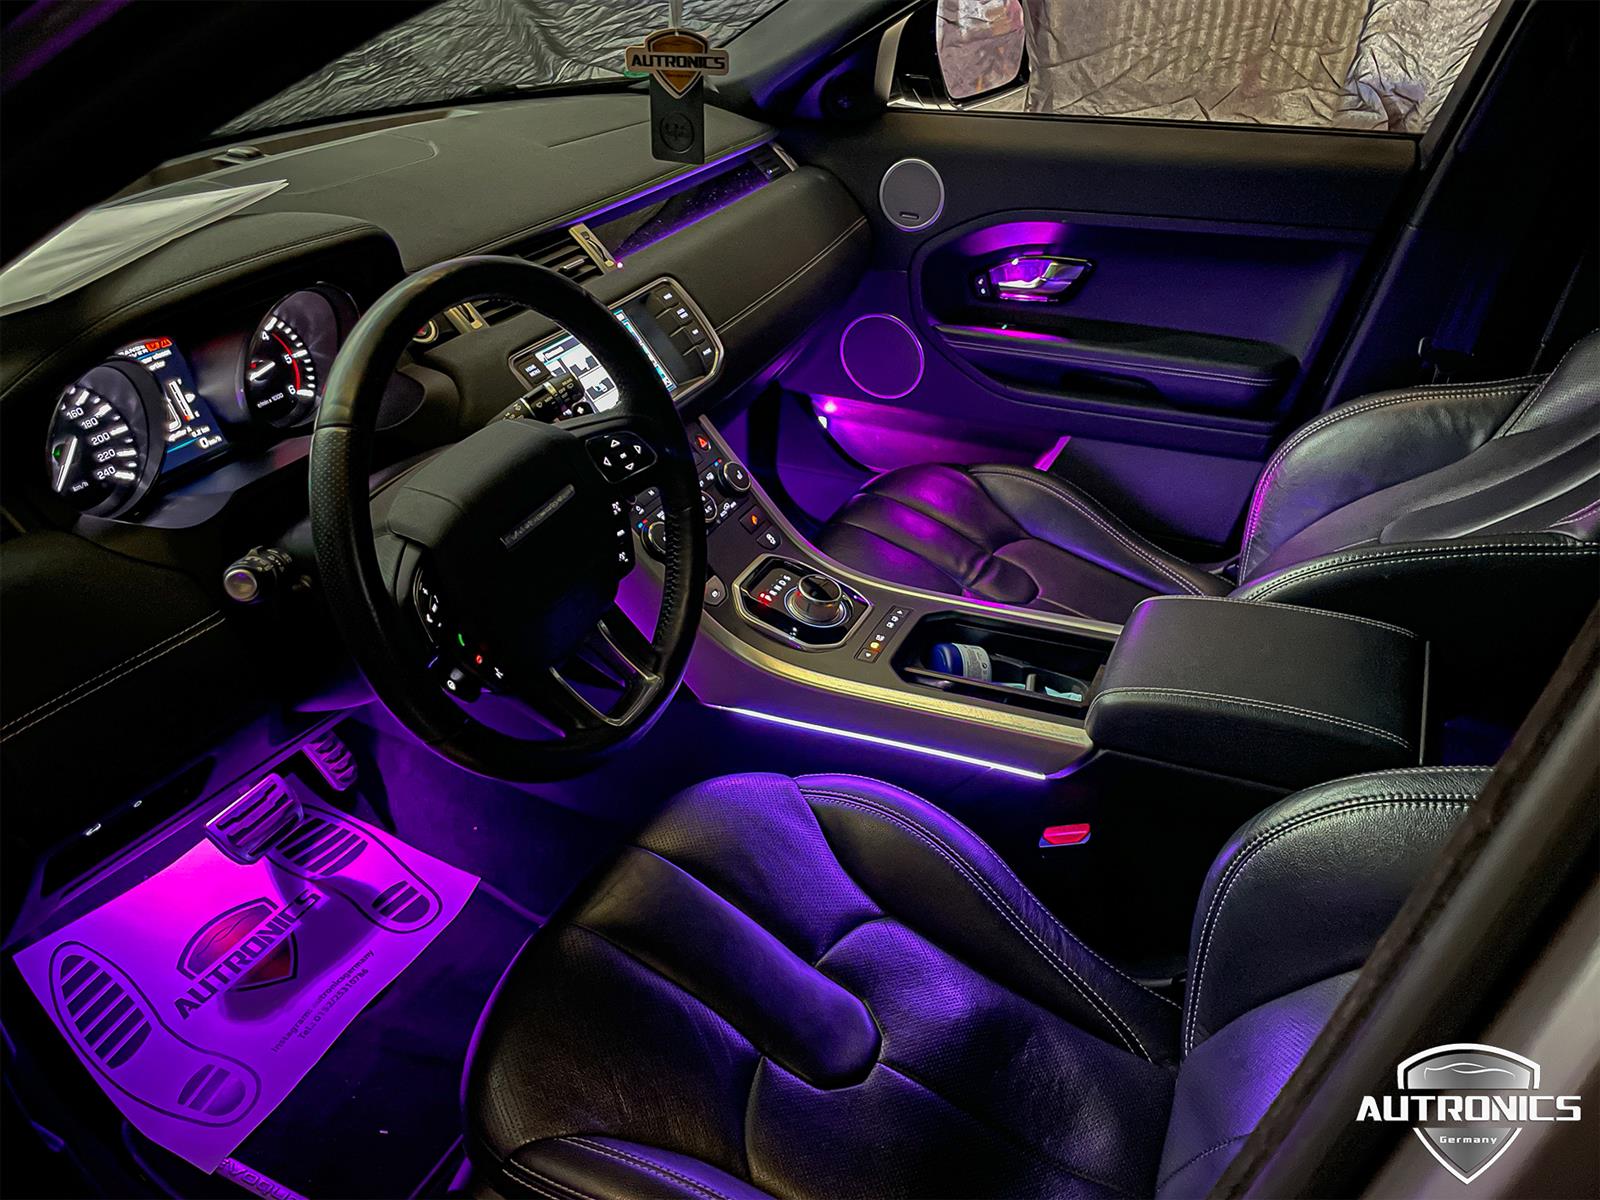 Ambientebeleuchtung Nachrüsten im Auto Innenraumbeleuchtung Beleuchtung geeignet für Range Rover Evoque - 01